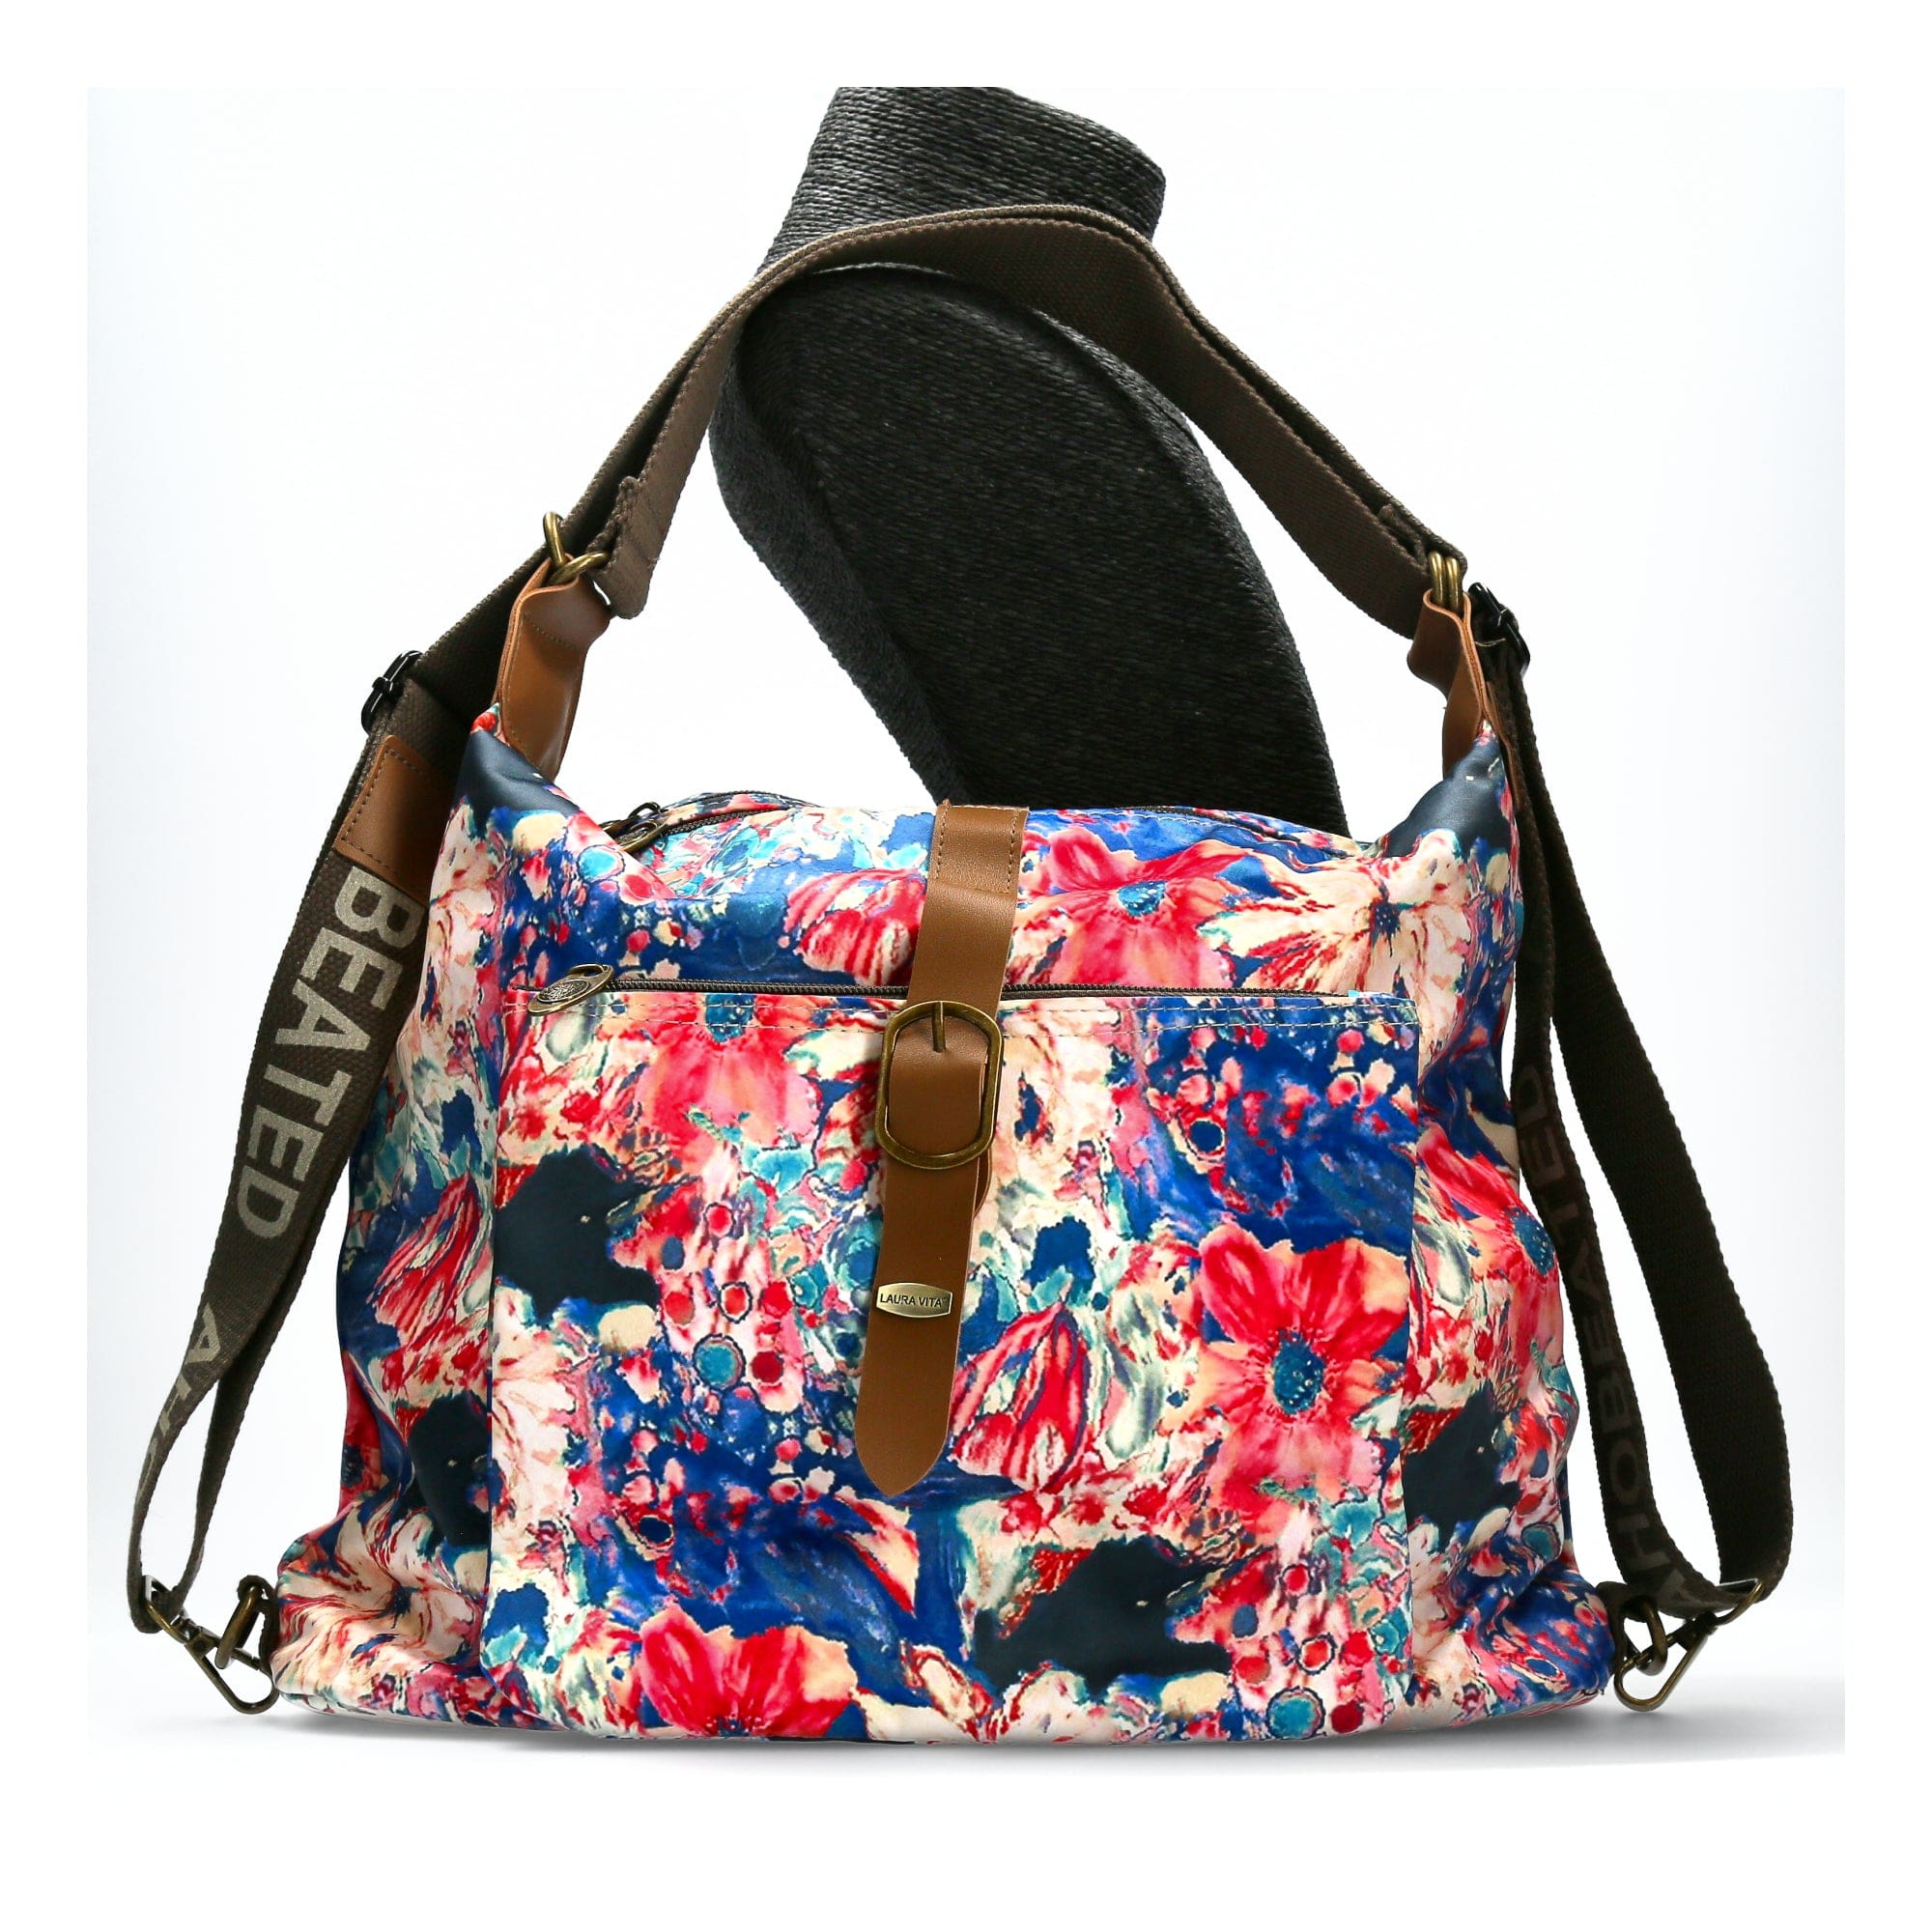 Jill Exclusivity multi bag - Bag